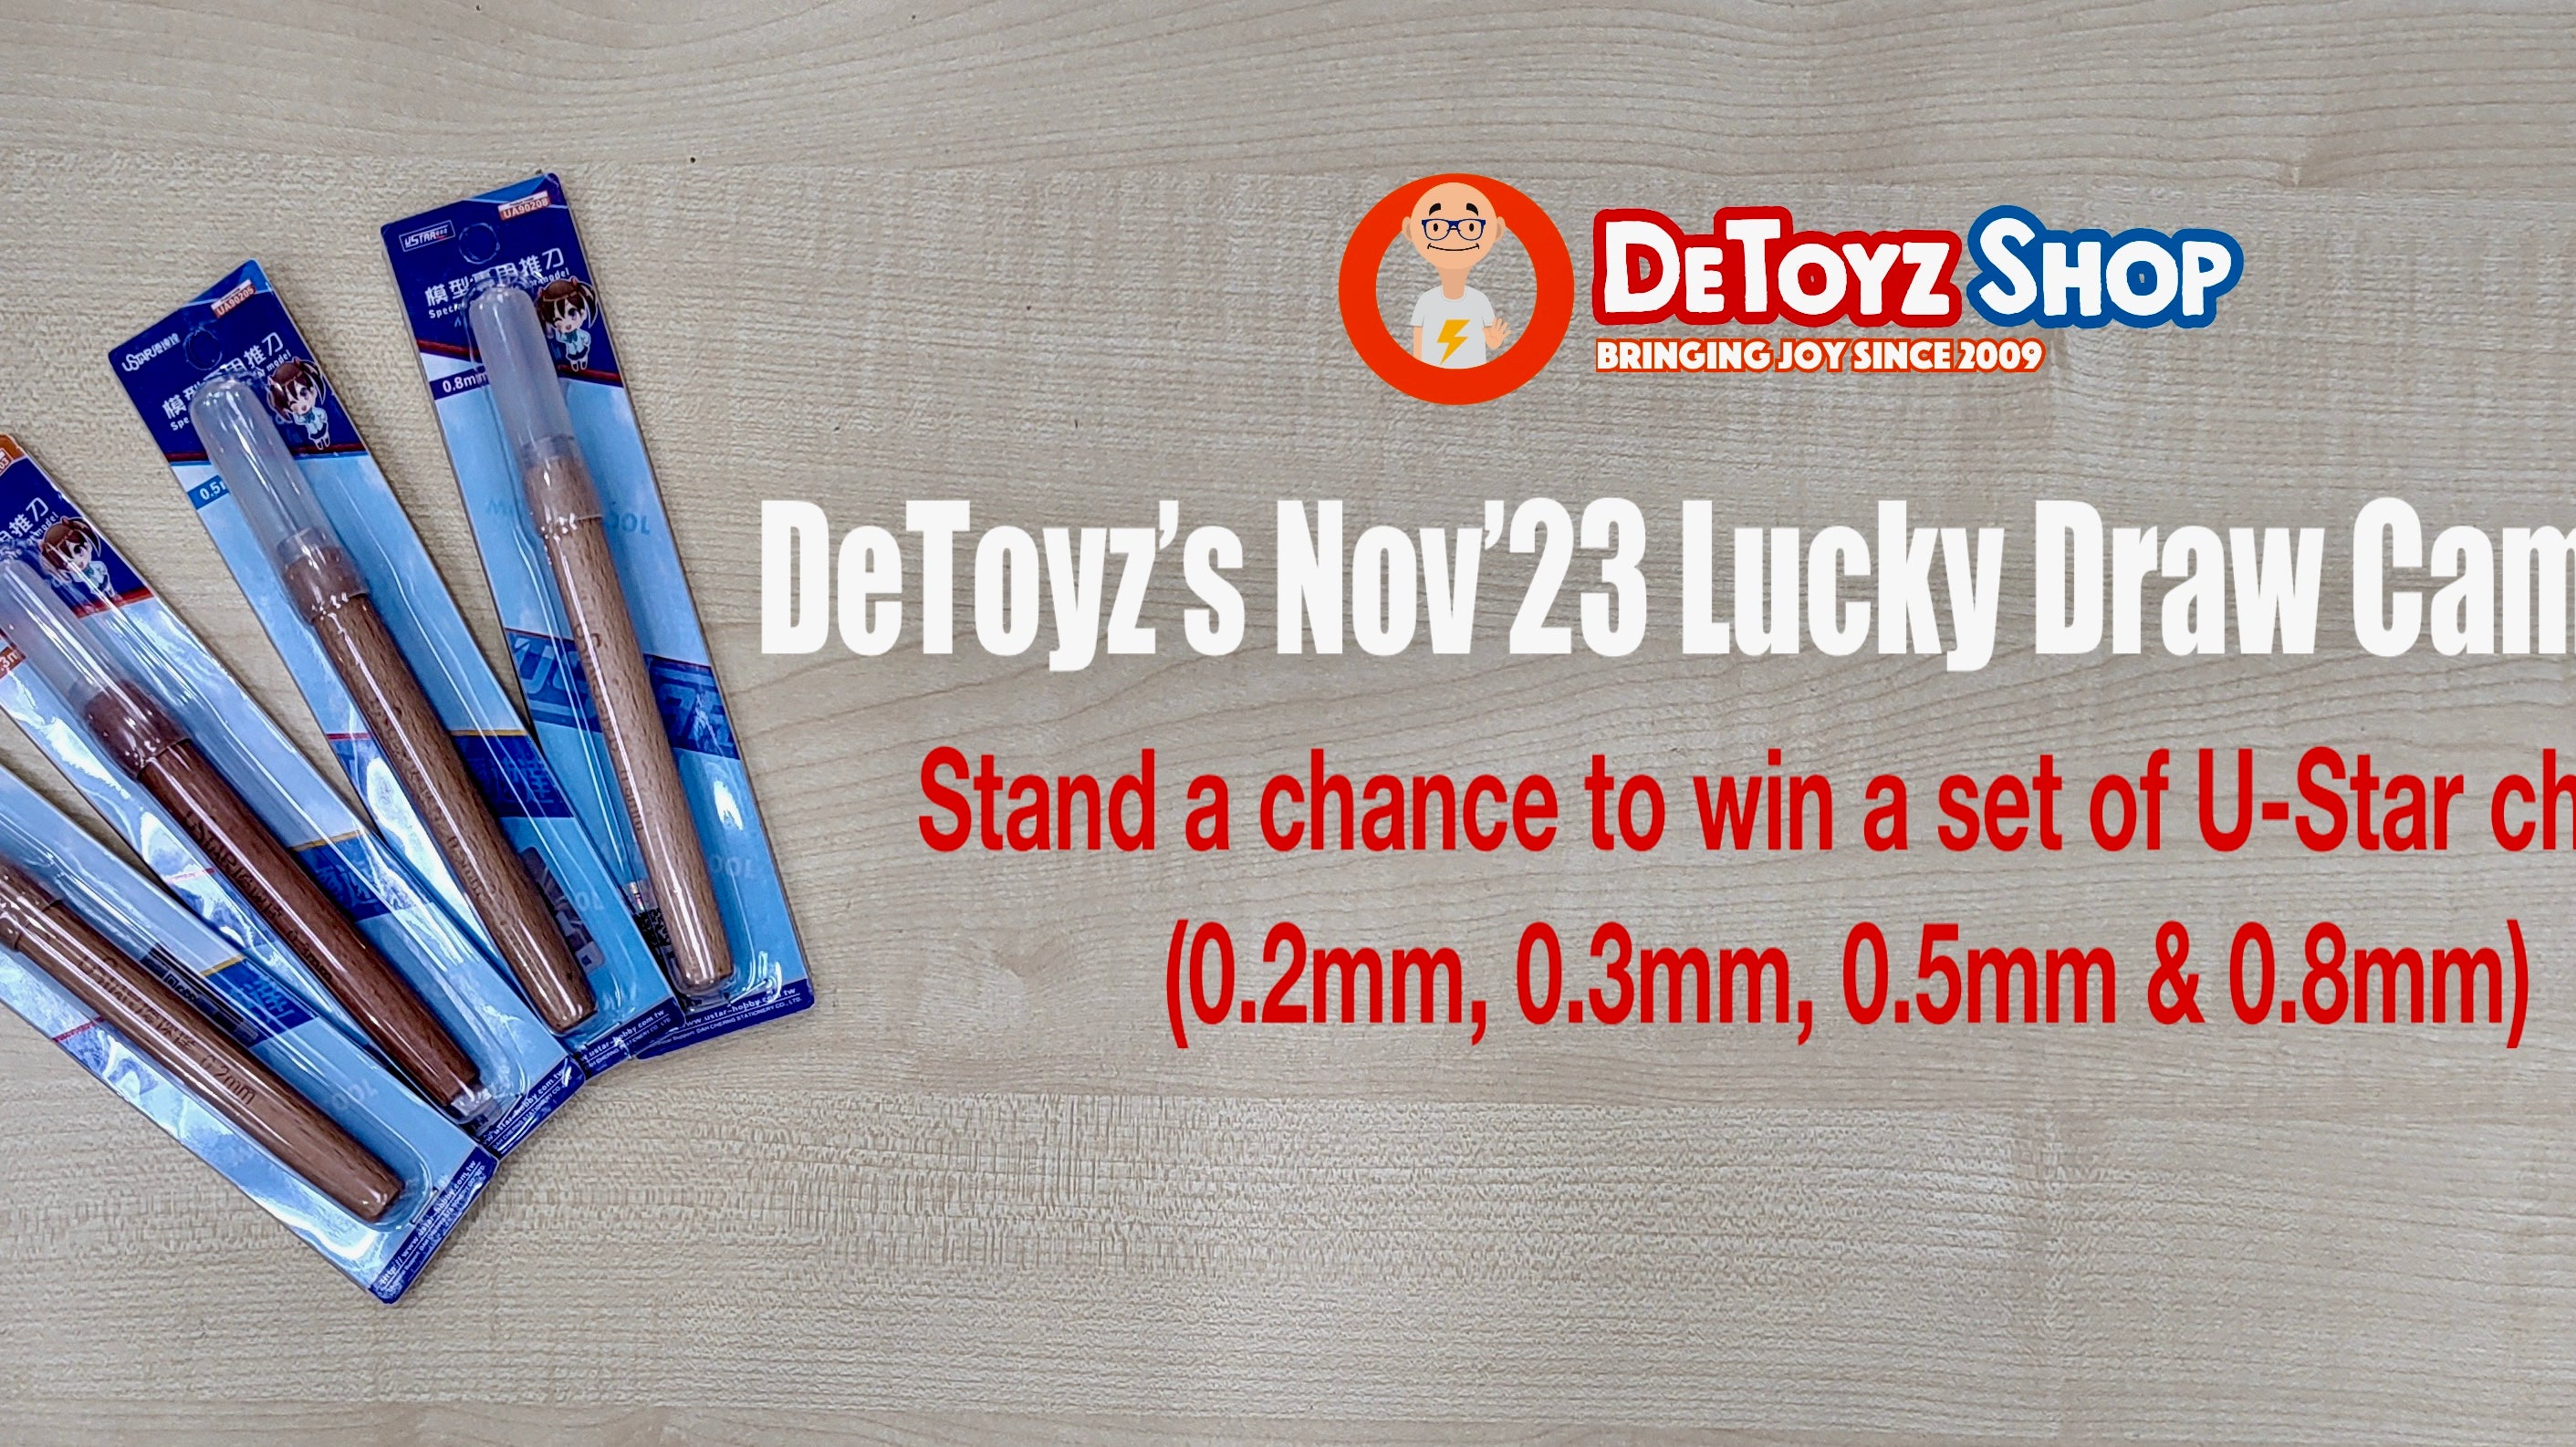 DeToyz Nov’23 Lucky Draw Campaign